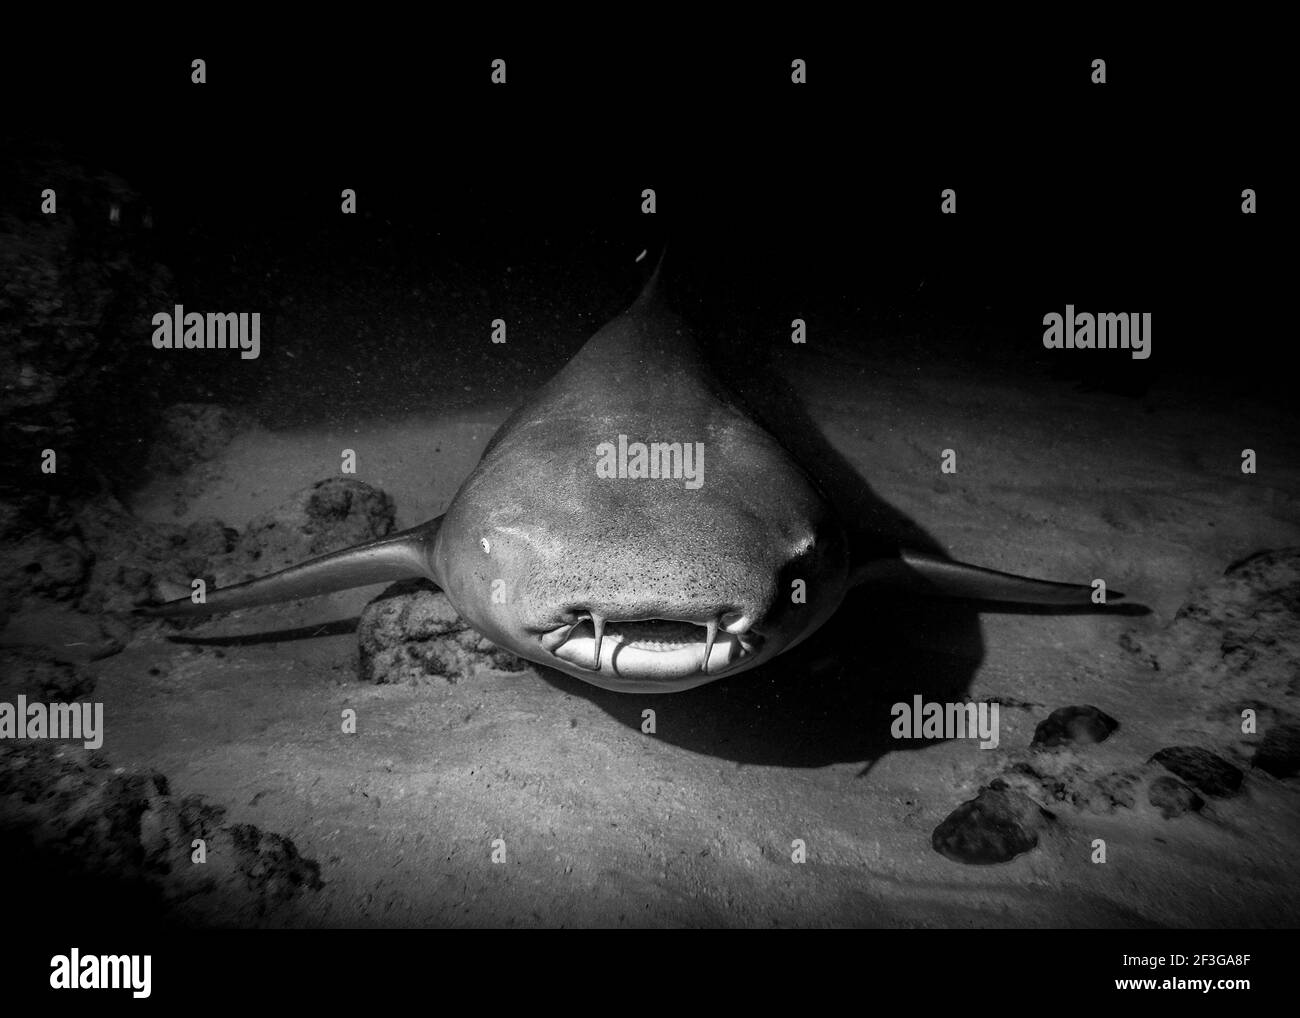 Ein direkter Blick in das Gesicht eines Nurse Shark, der nachts auf dem Sand am Boden des Indischen Ozeans ruht, in Schwarz und Weiß Stockfoto